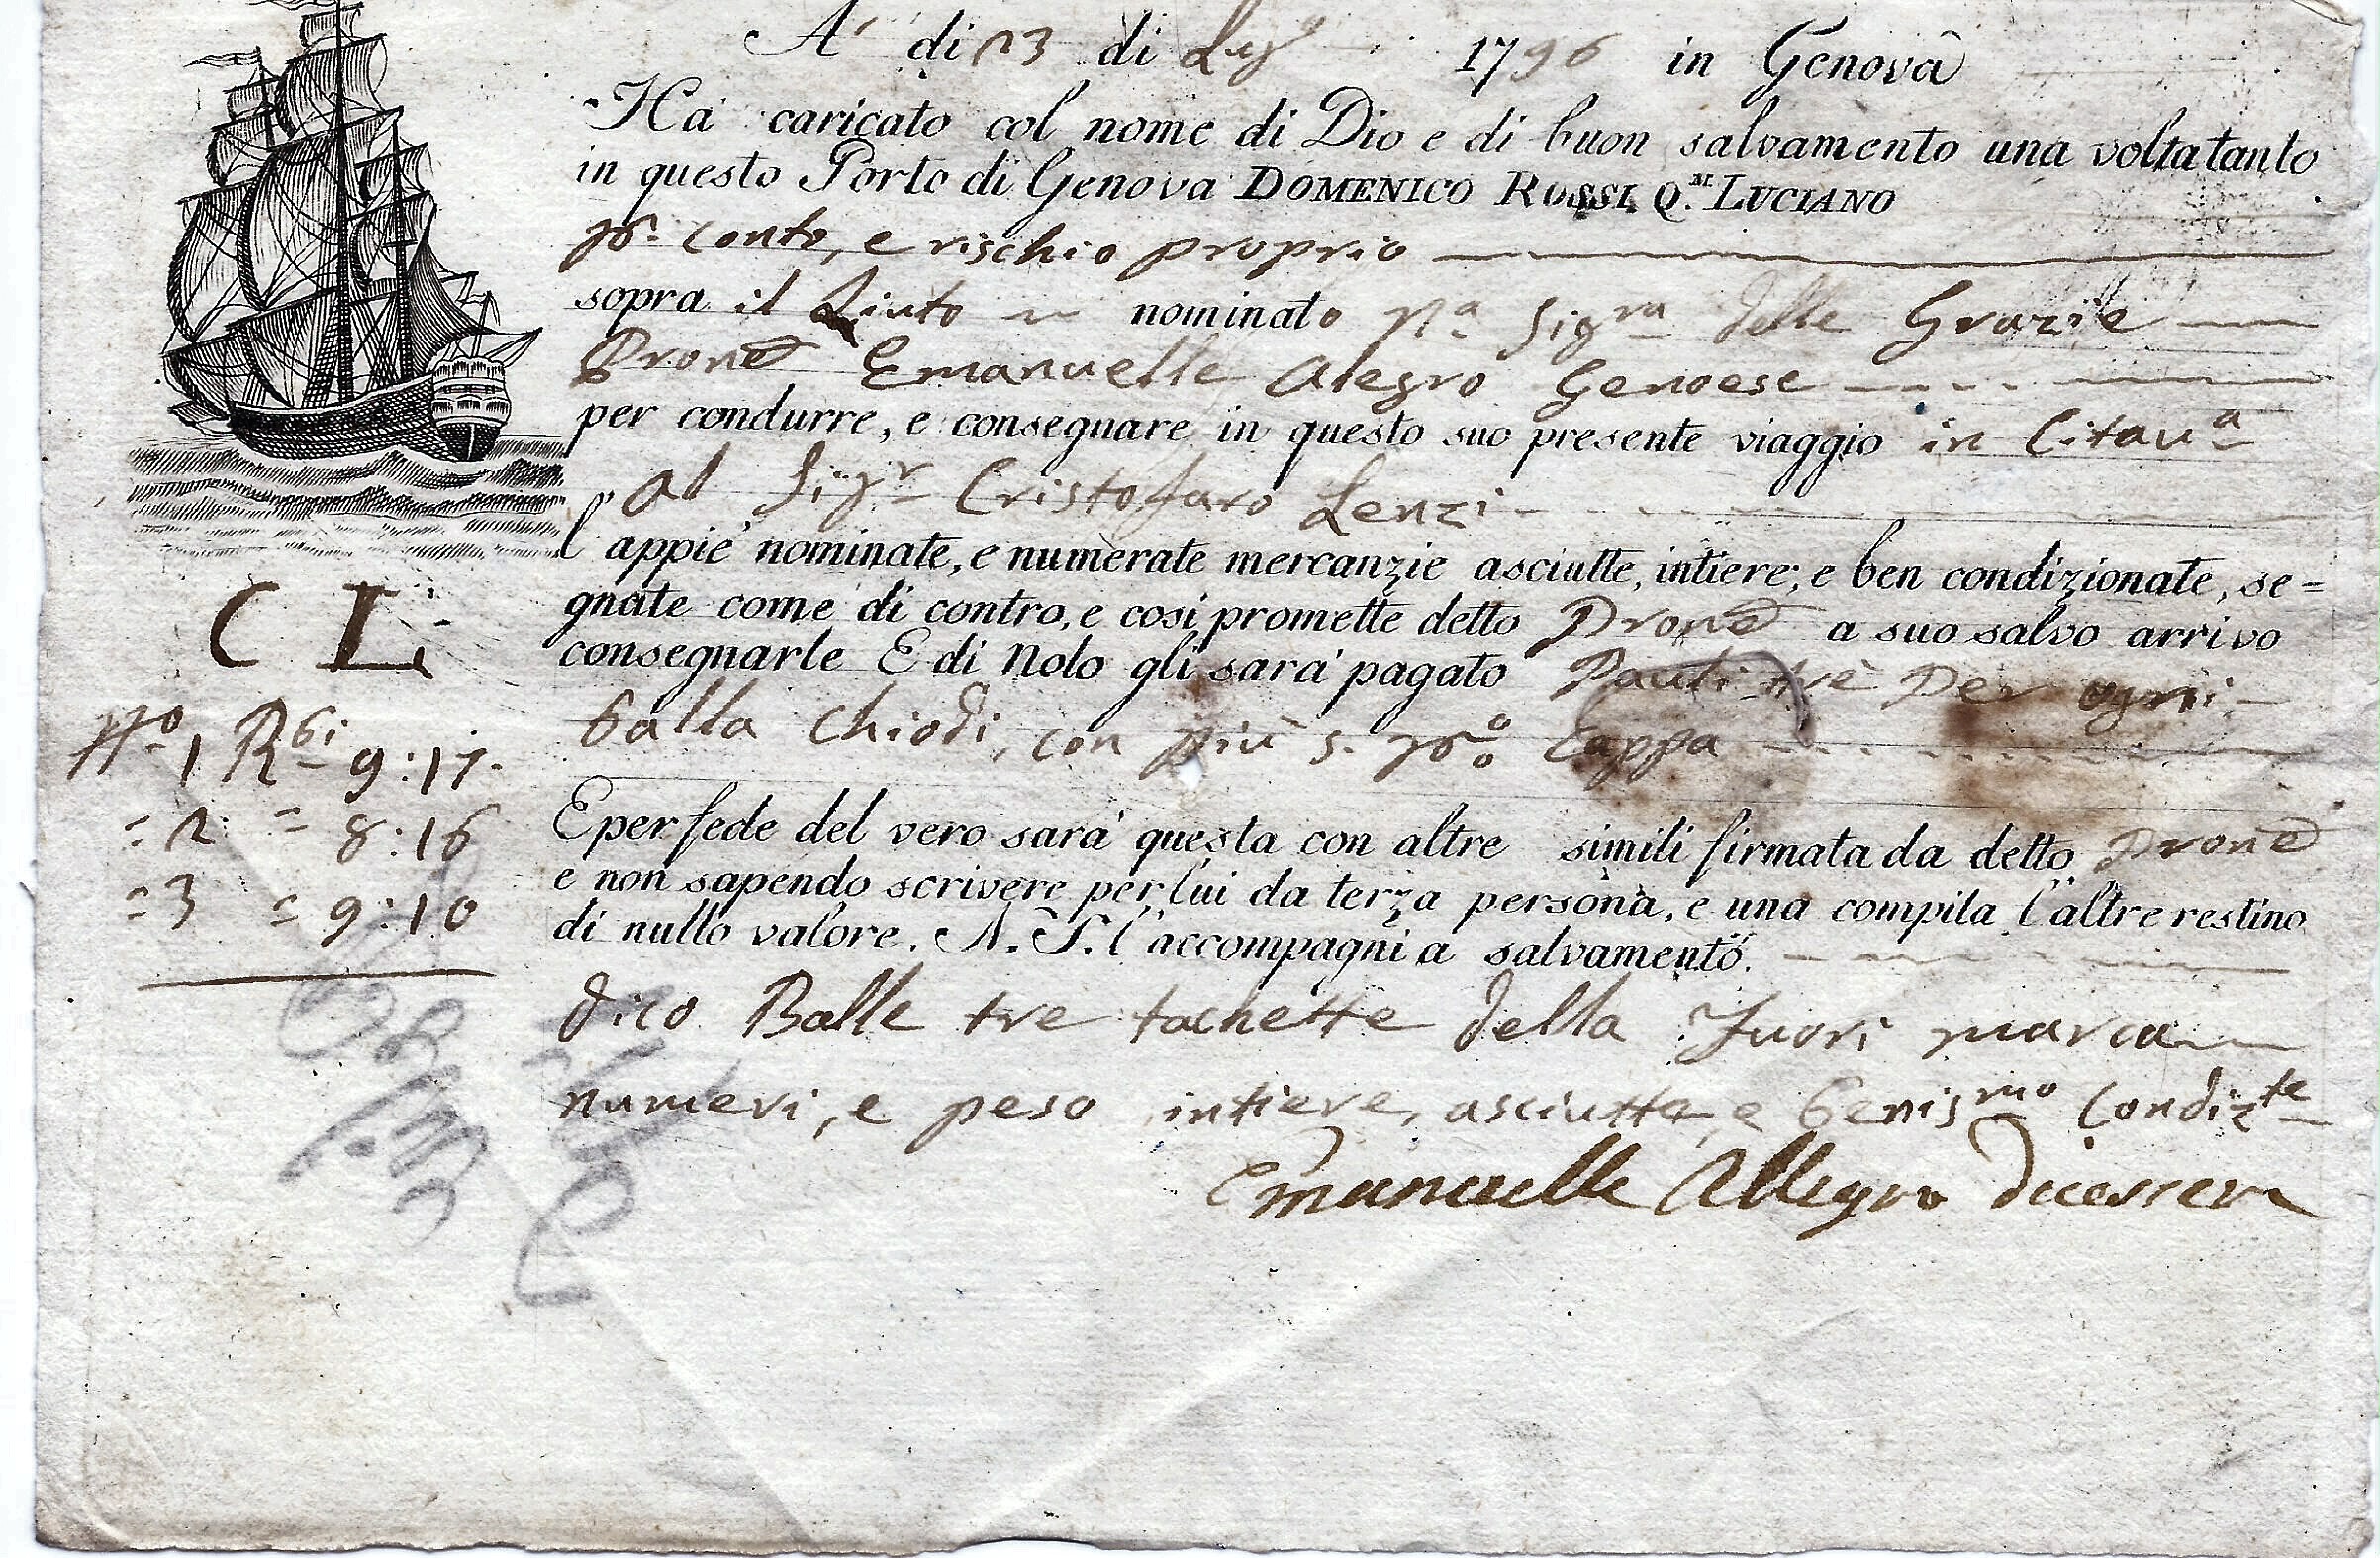 1796 23 Luglio da Genova a Catania, carta filigranata.